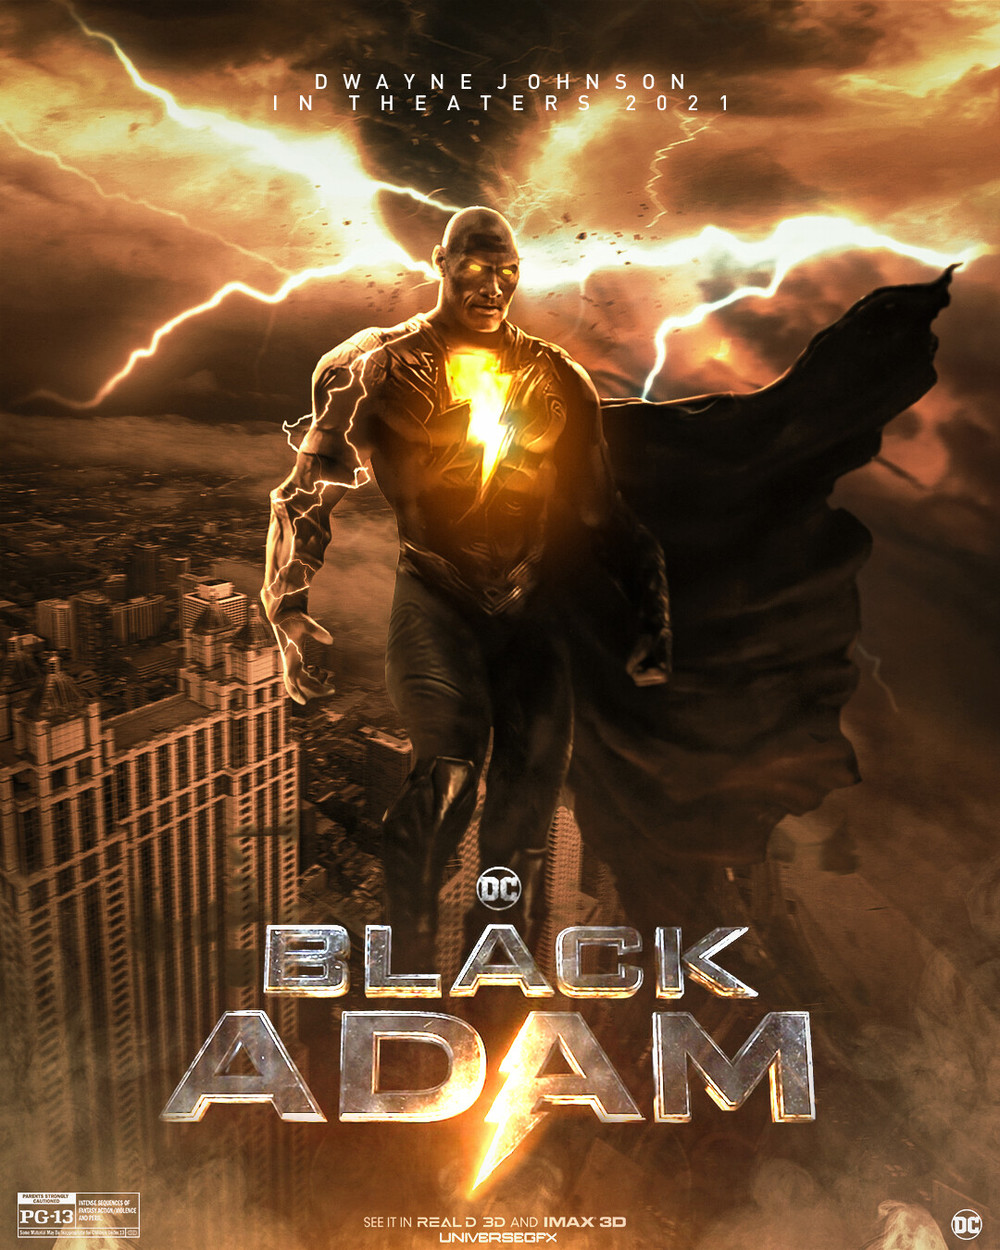  
Poster của Black Adam được công bố khiến nhiều người hâm mộ phấn khích. (Ảnh: Art Station)